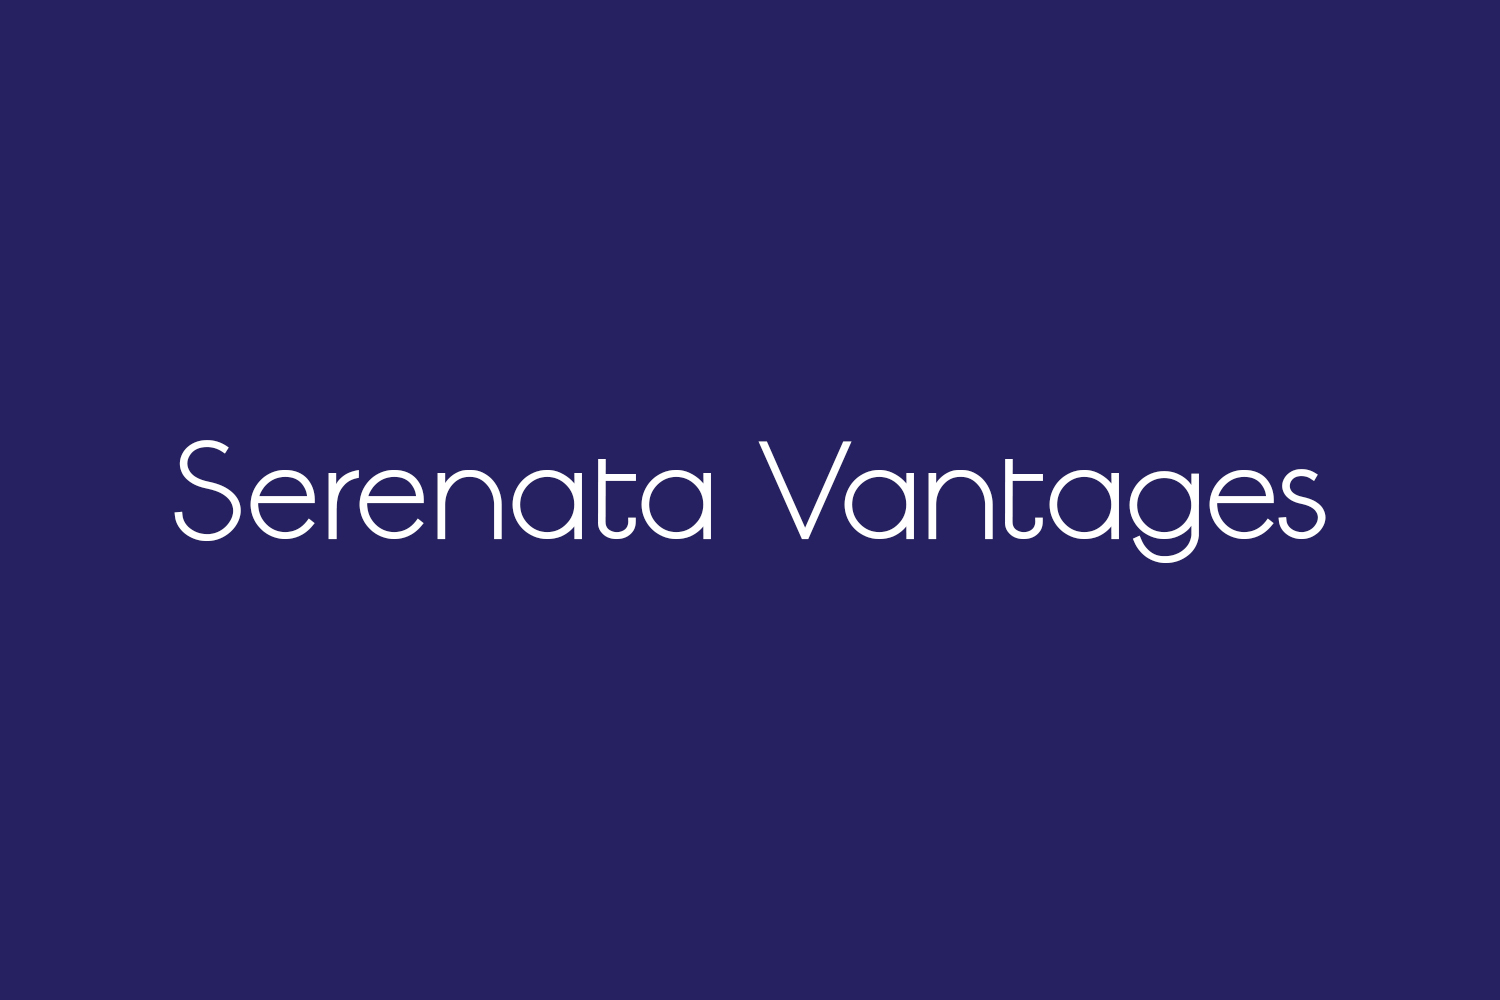 Serenata Vantages Free Font Family